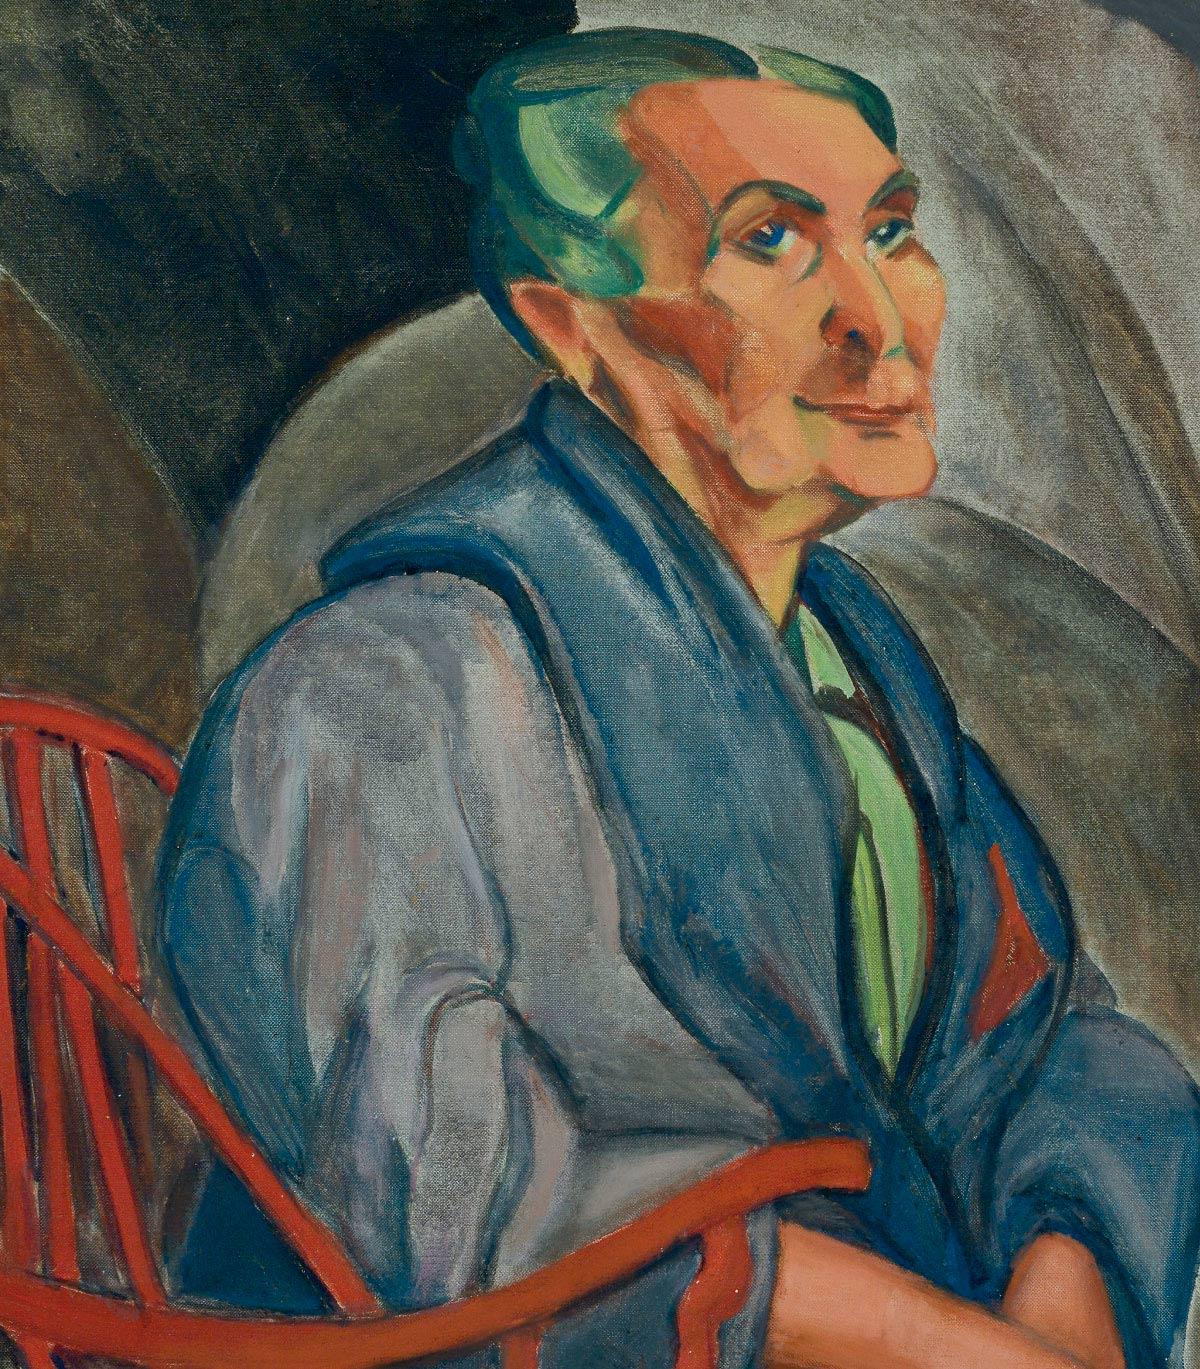 Anita Malfatti, A mulher do cabelo verde, 1915, óleo sobre tela